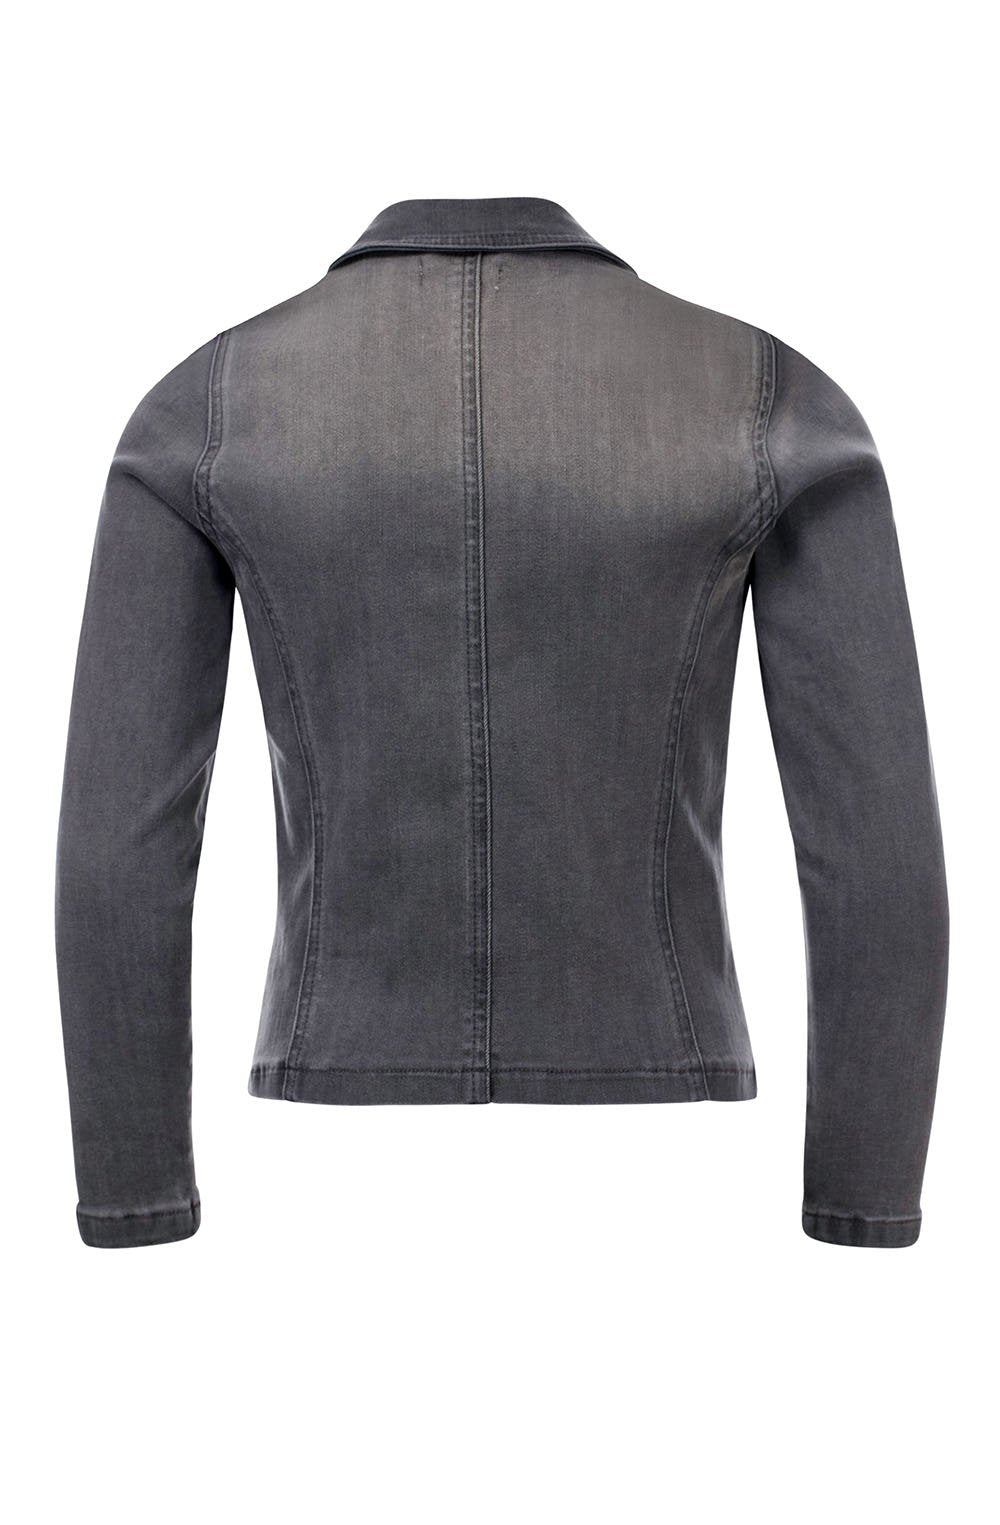 Meisjes Biker jacket soft grey van LOOXS 10sixteen in de kleur SOFT GREY in maat 176.